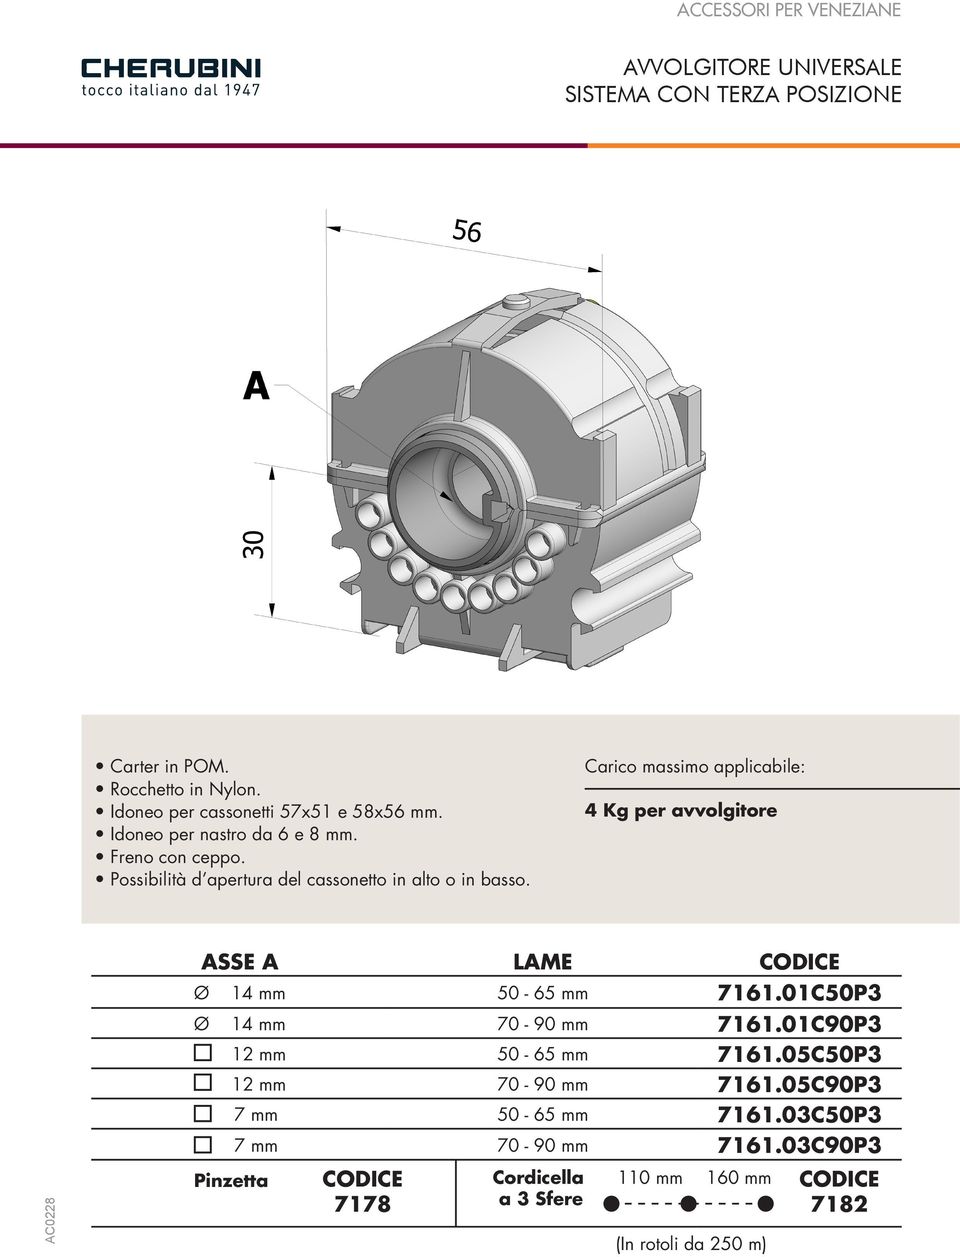 Carico massimo applicabile: 4 Kg per avvolgitore ASSE A LAME CODICE Ø 14 mm 50-65 mm 7161.01C50P3 Ø 14 mm 70-90 mm 7161.